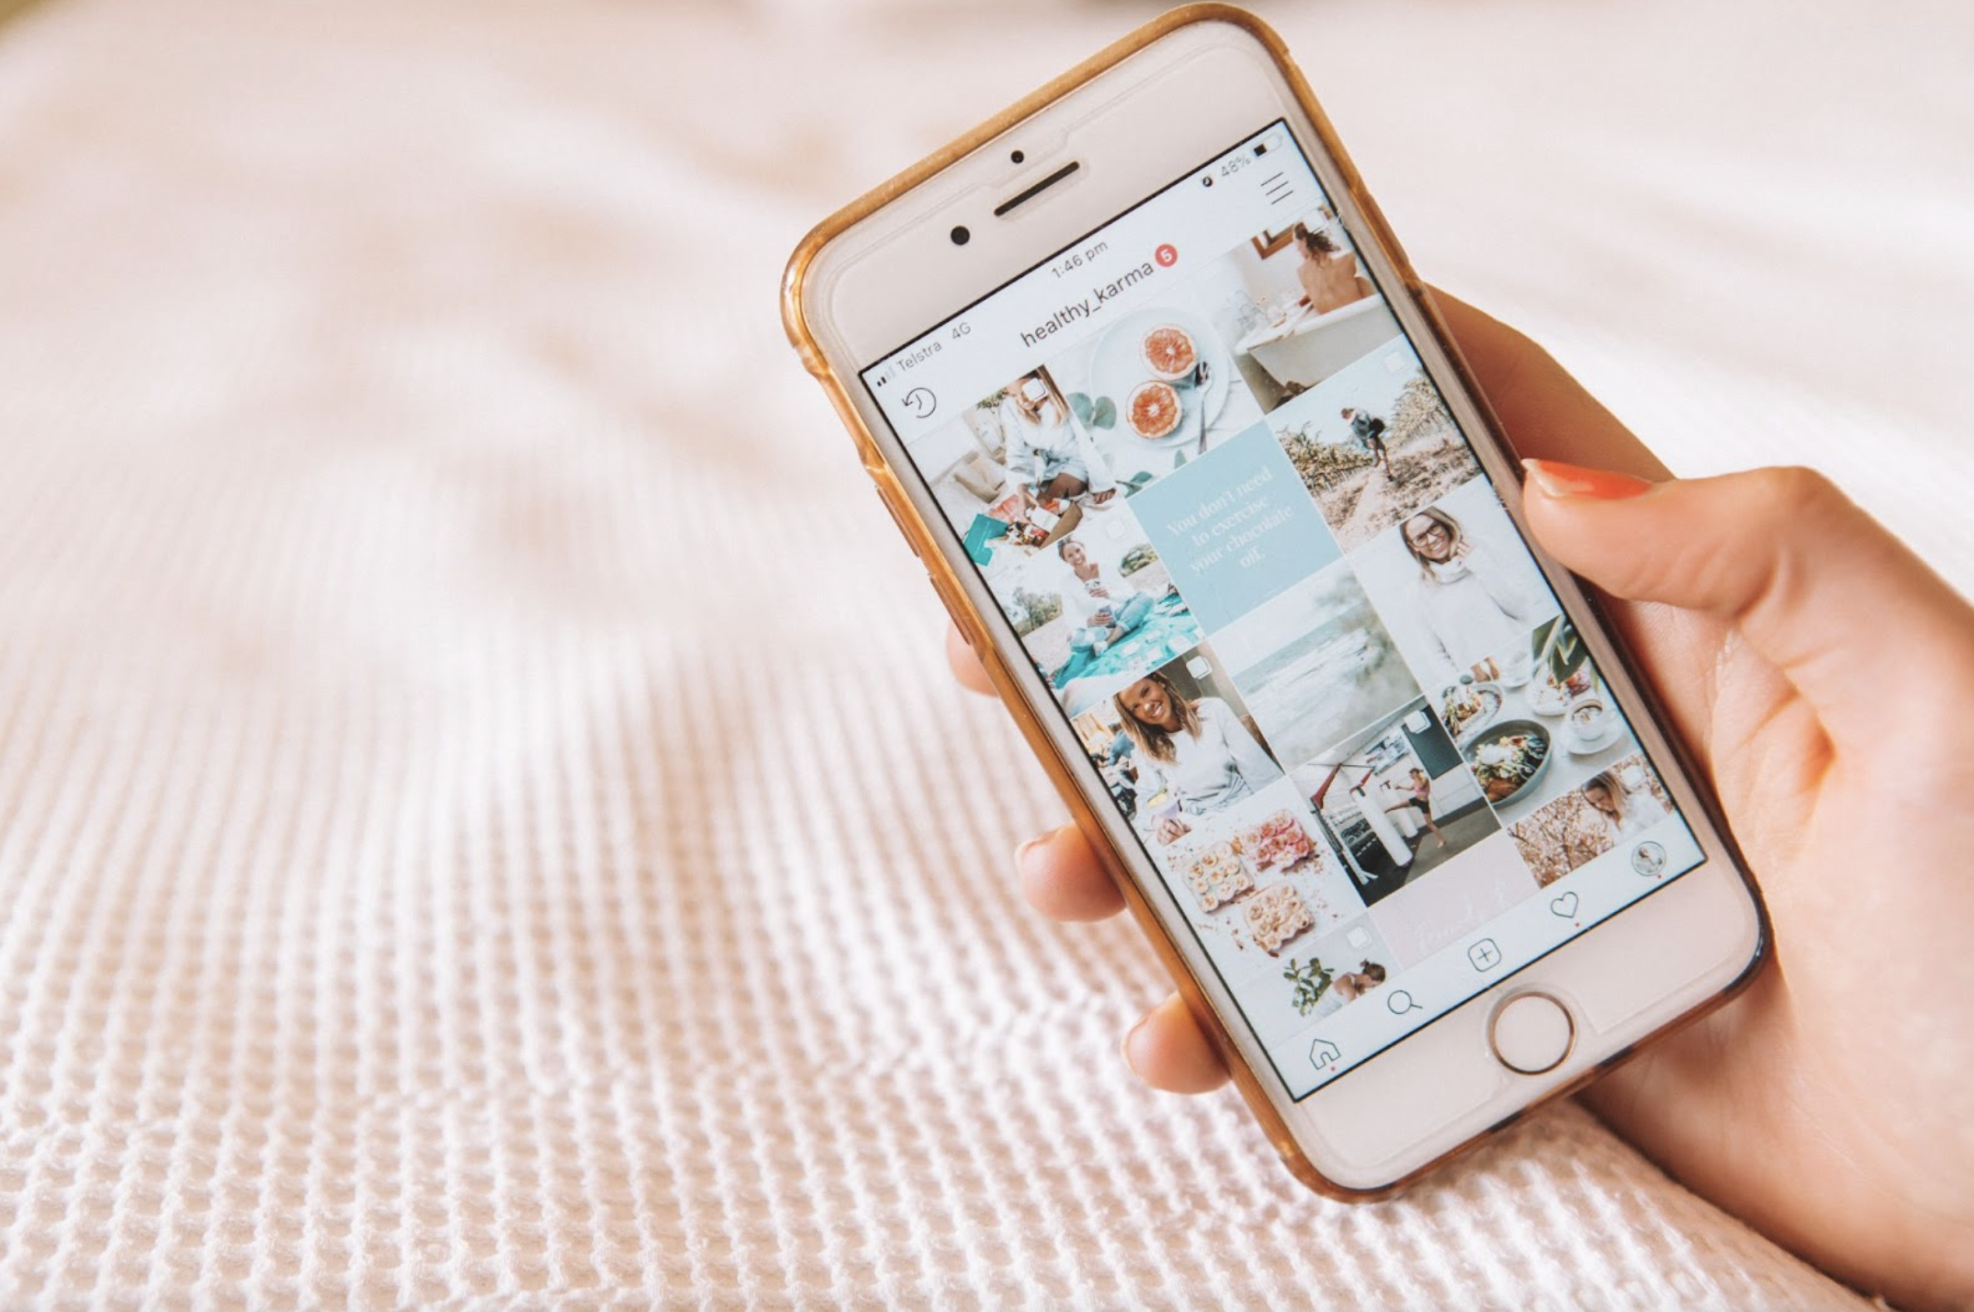 Instagram và Tiktok đang trở thành nơi để chia sẻ những video ngắn đầy sáng tạo. Với Instagram and TikTok Video Background Changes, bạn có thể thay đổi nền video của mình một cách dễ dàng và đem lại sức thu hút tuyệt vời trong mắt người xem. Hãy khám phá hình ảnh liên quan để tìm hiểu thêm chi tiết về cách sử dụng công cụ này cho lĩnh vực của riêng bạn.